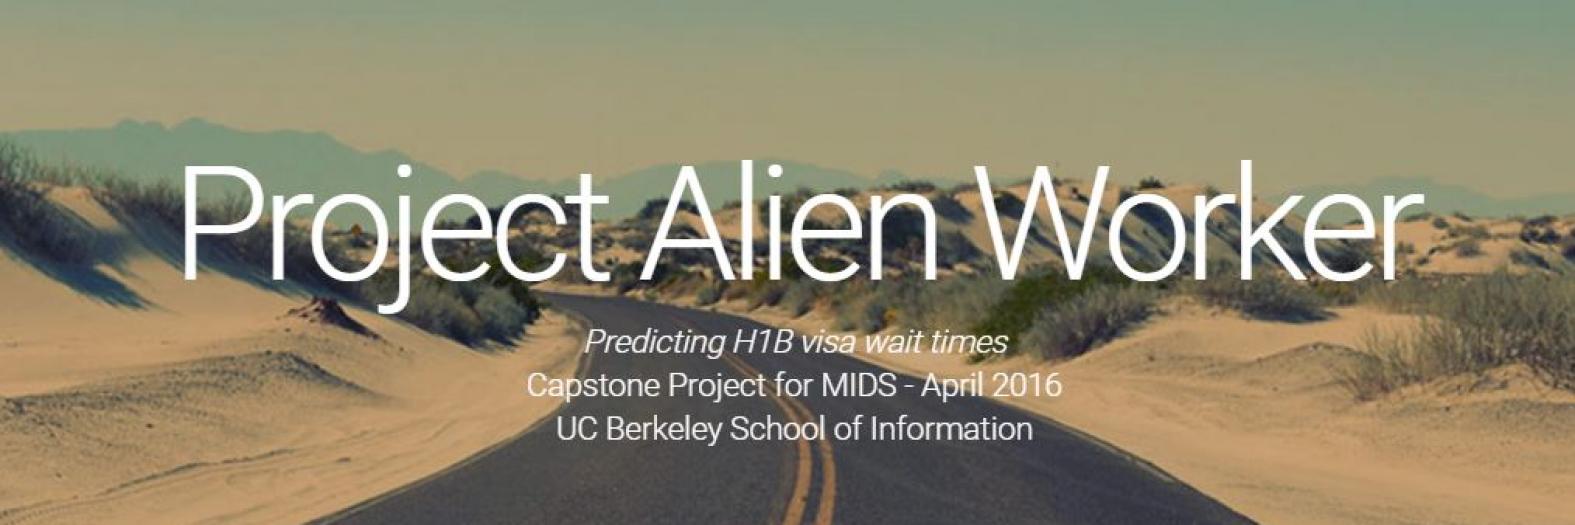 Project Alien Worker